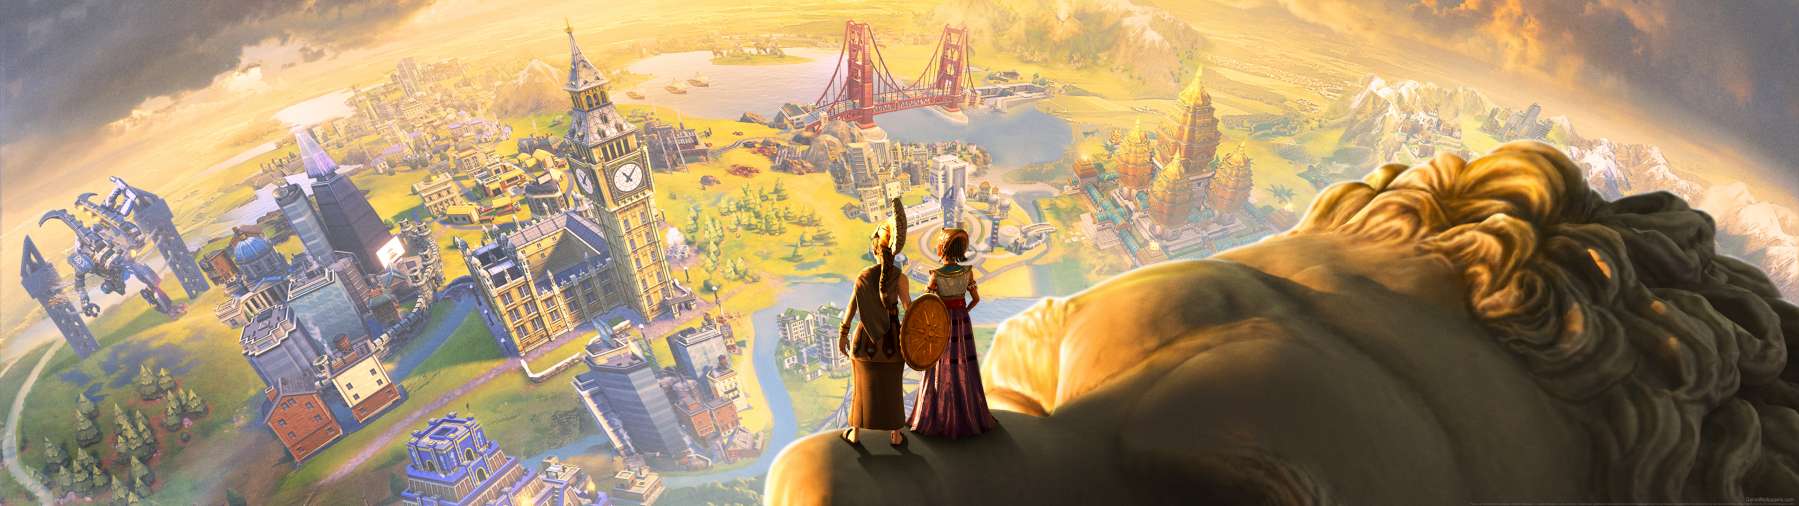 Sid Meier's Civilization 6: Anthology wallpaper or background